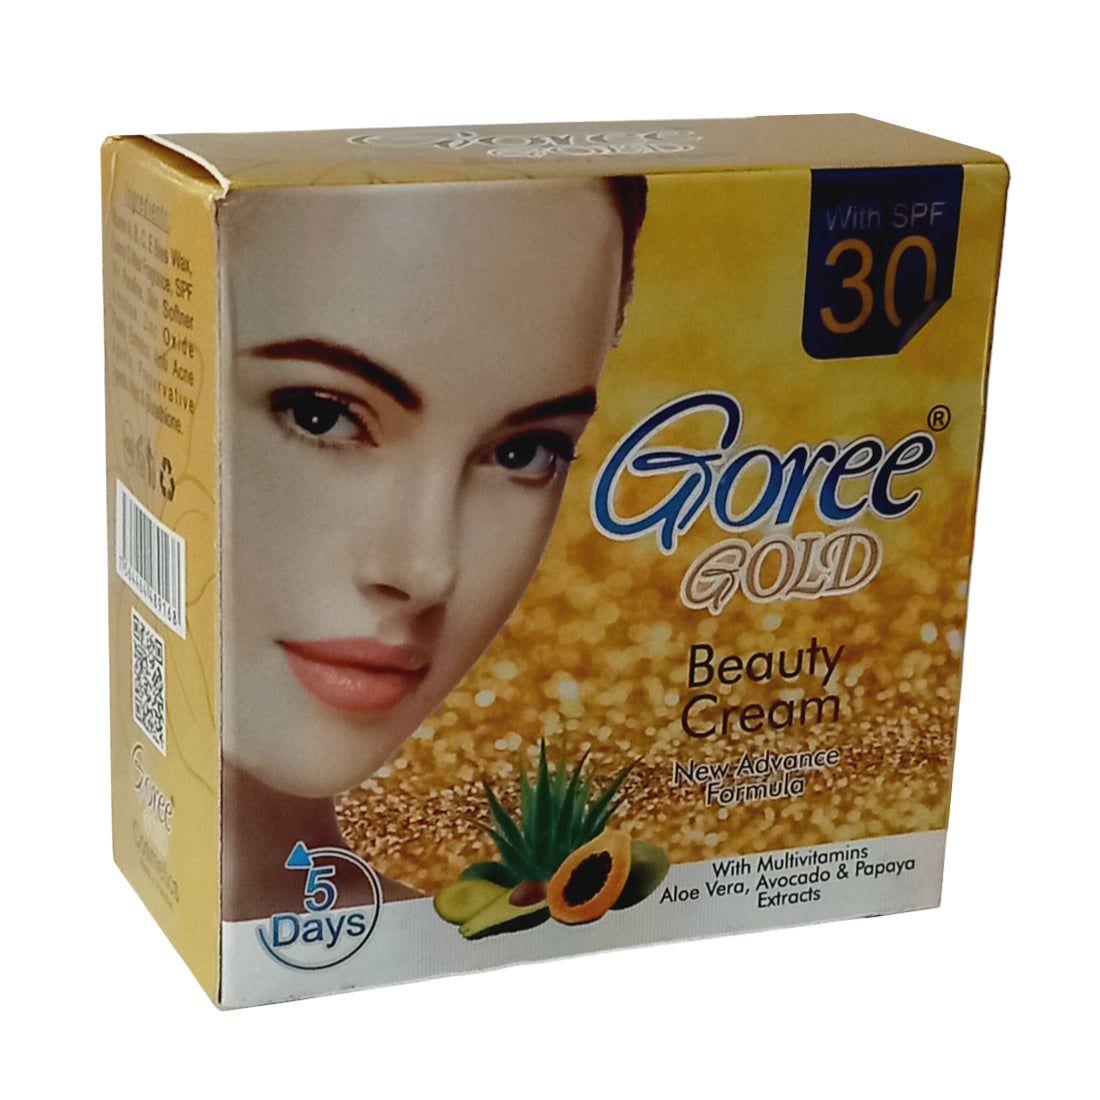 Goree Gold Beauty Fairness Cream 30gm